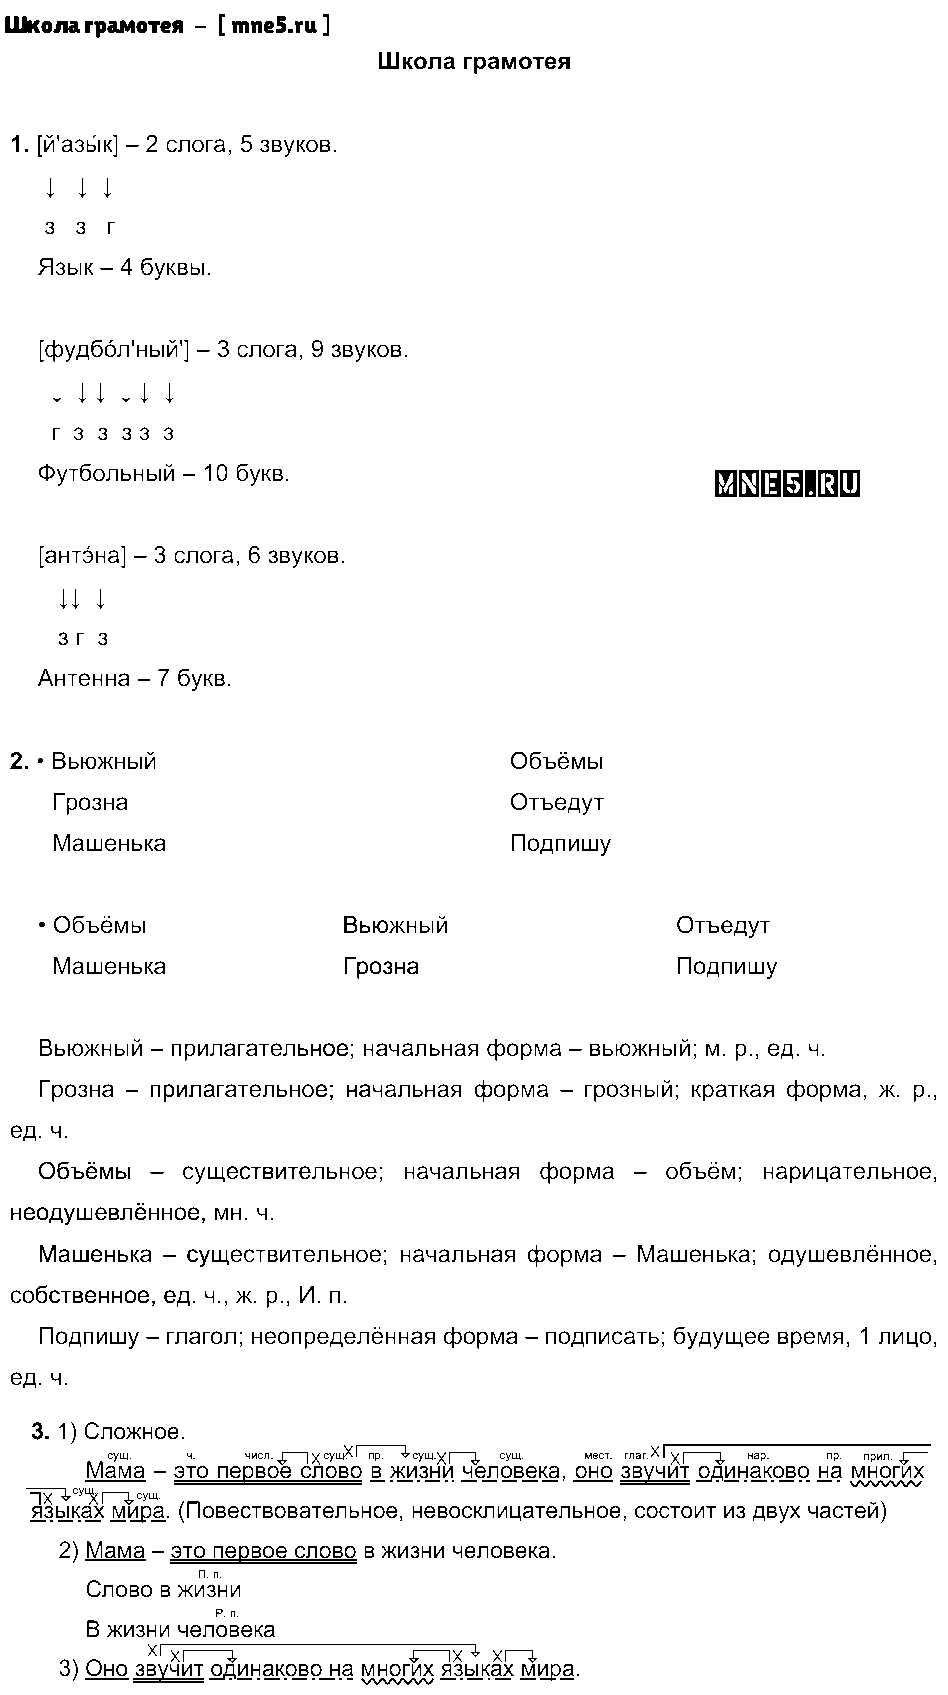 ГДЗ Русский язык 3 класс - Школа грамотея